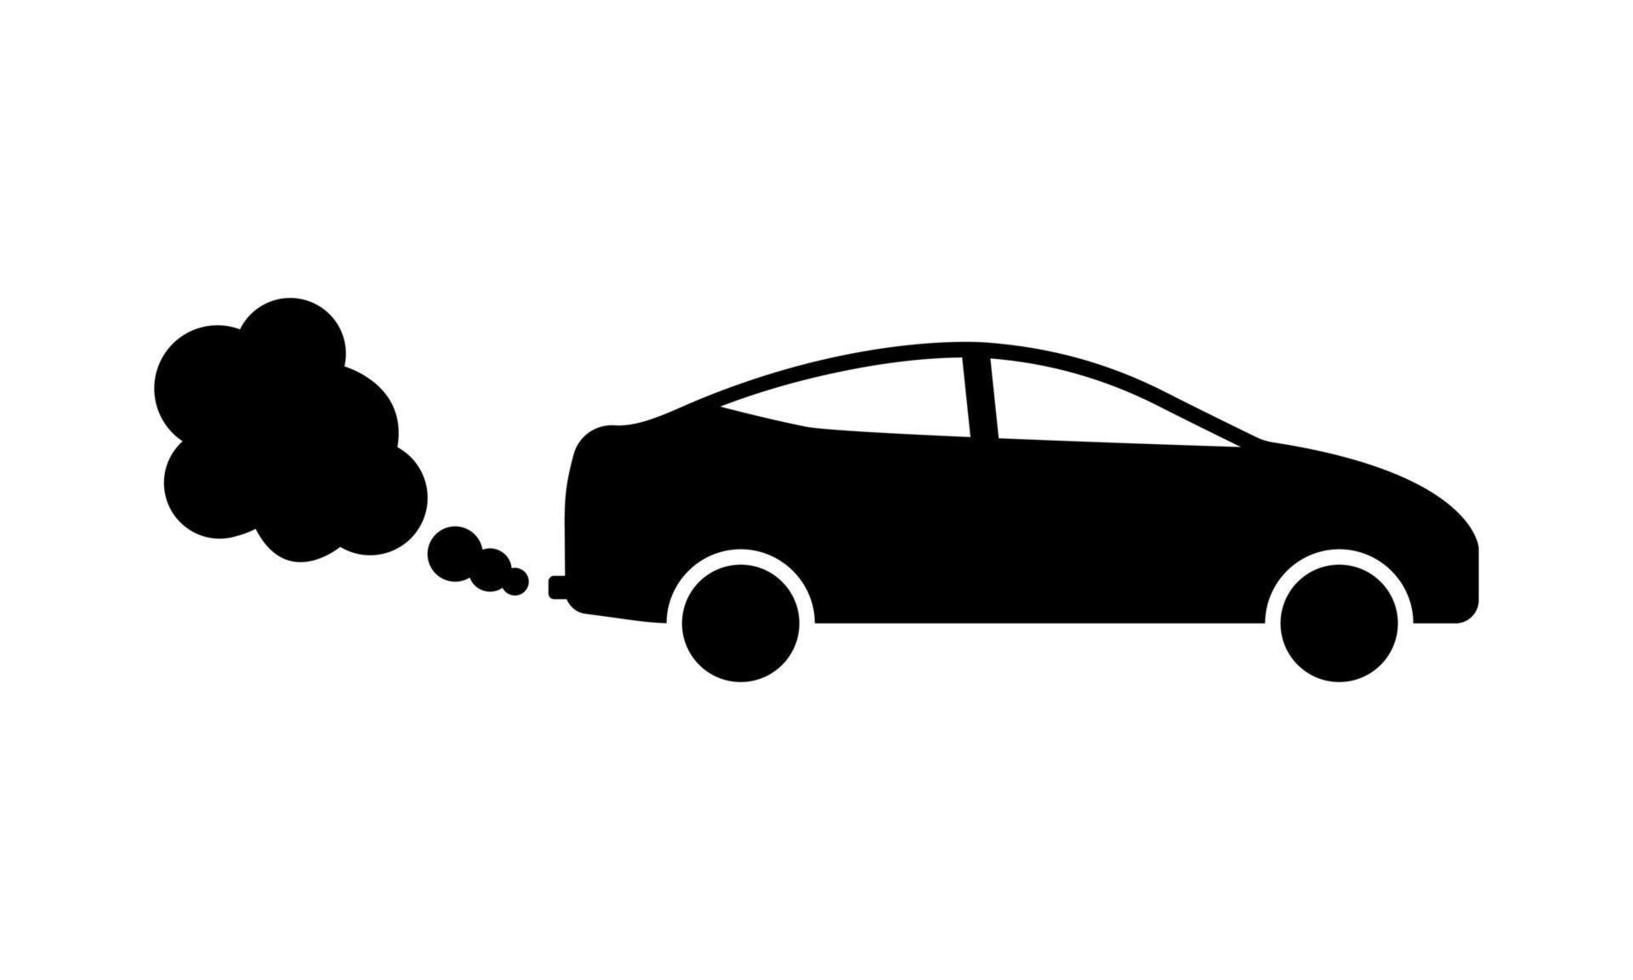 simbolo del biossido d'aria dello smog dell'auto. icona della siluetta nera di co2 di scarico dell'auto. conservazione dell'ambiente climatico. pittogramma del glifo con emissione di gas di fumo di tubo del veicolo di trasporto. illustrazione vettoriale isolata.